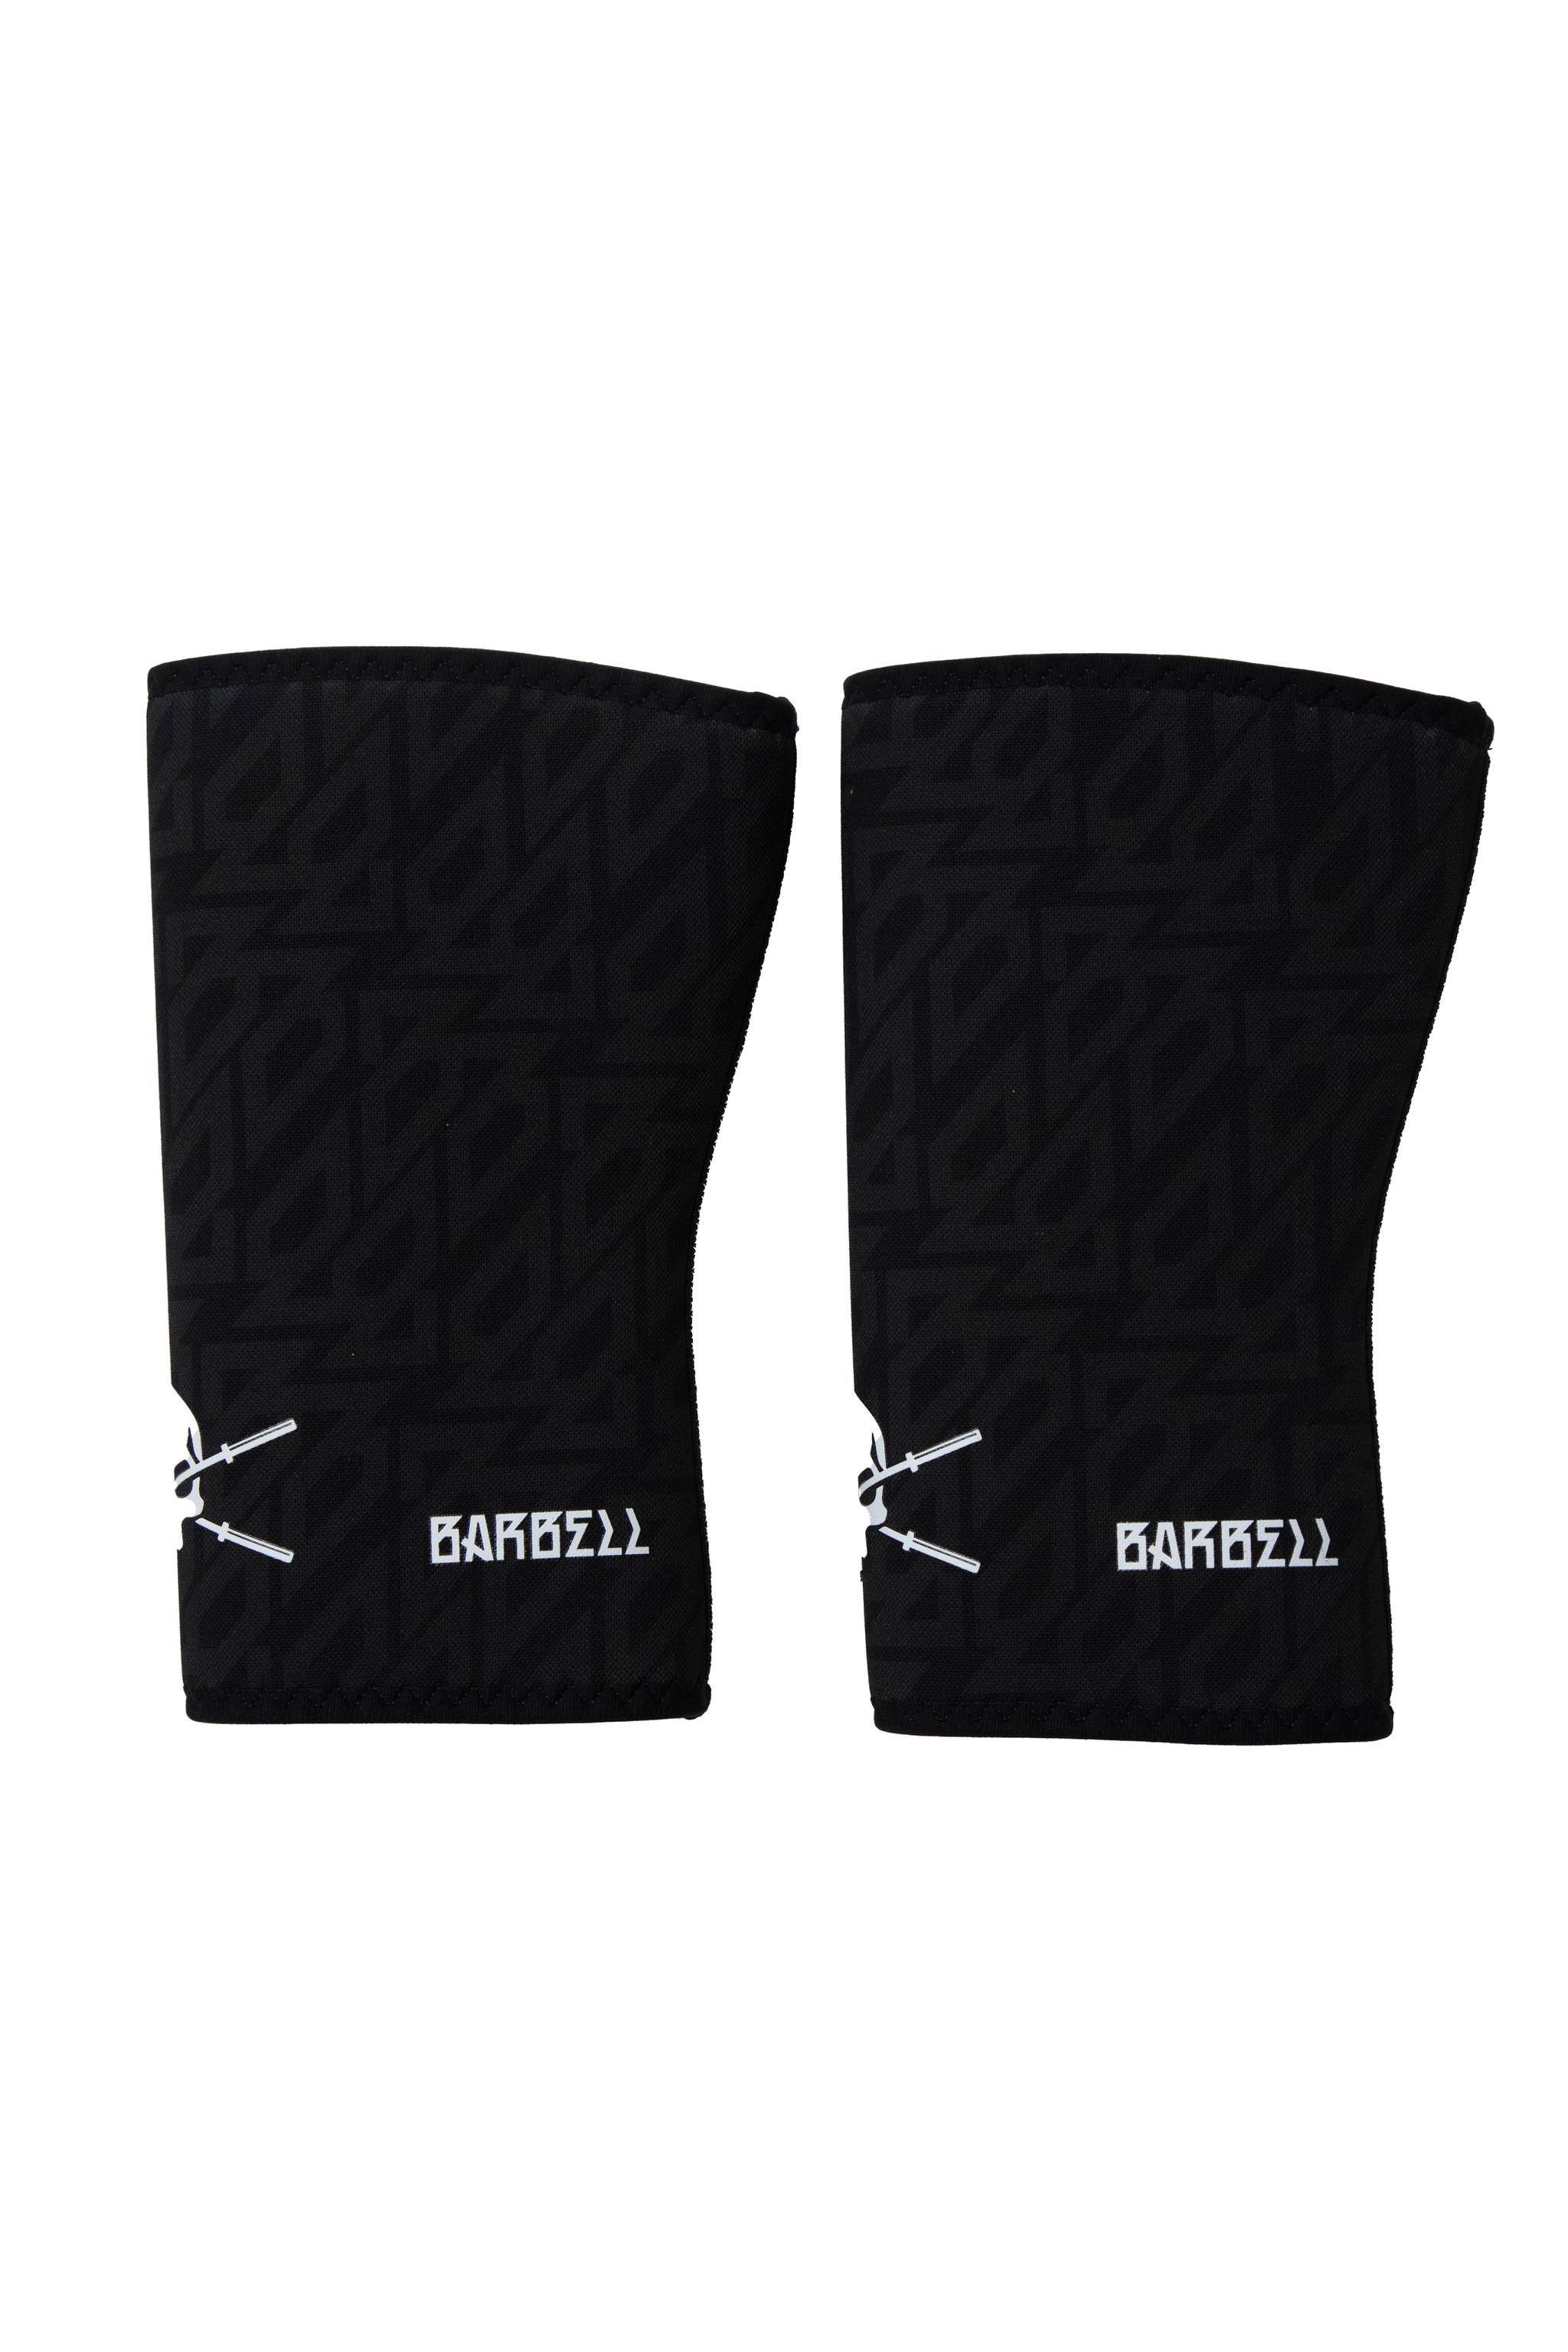 Barbell Brigade - Pro Series 7MM Knee Sleeves (Black w/ BB Pattern)